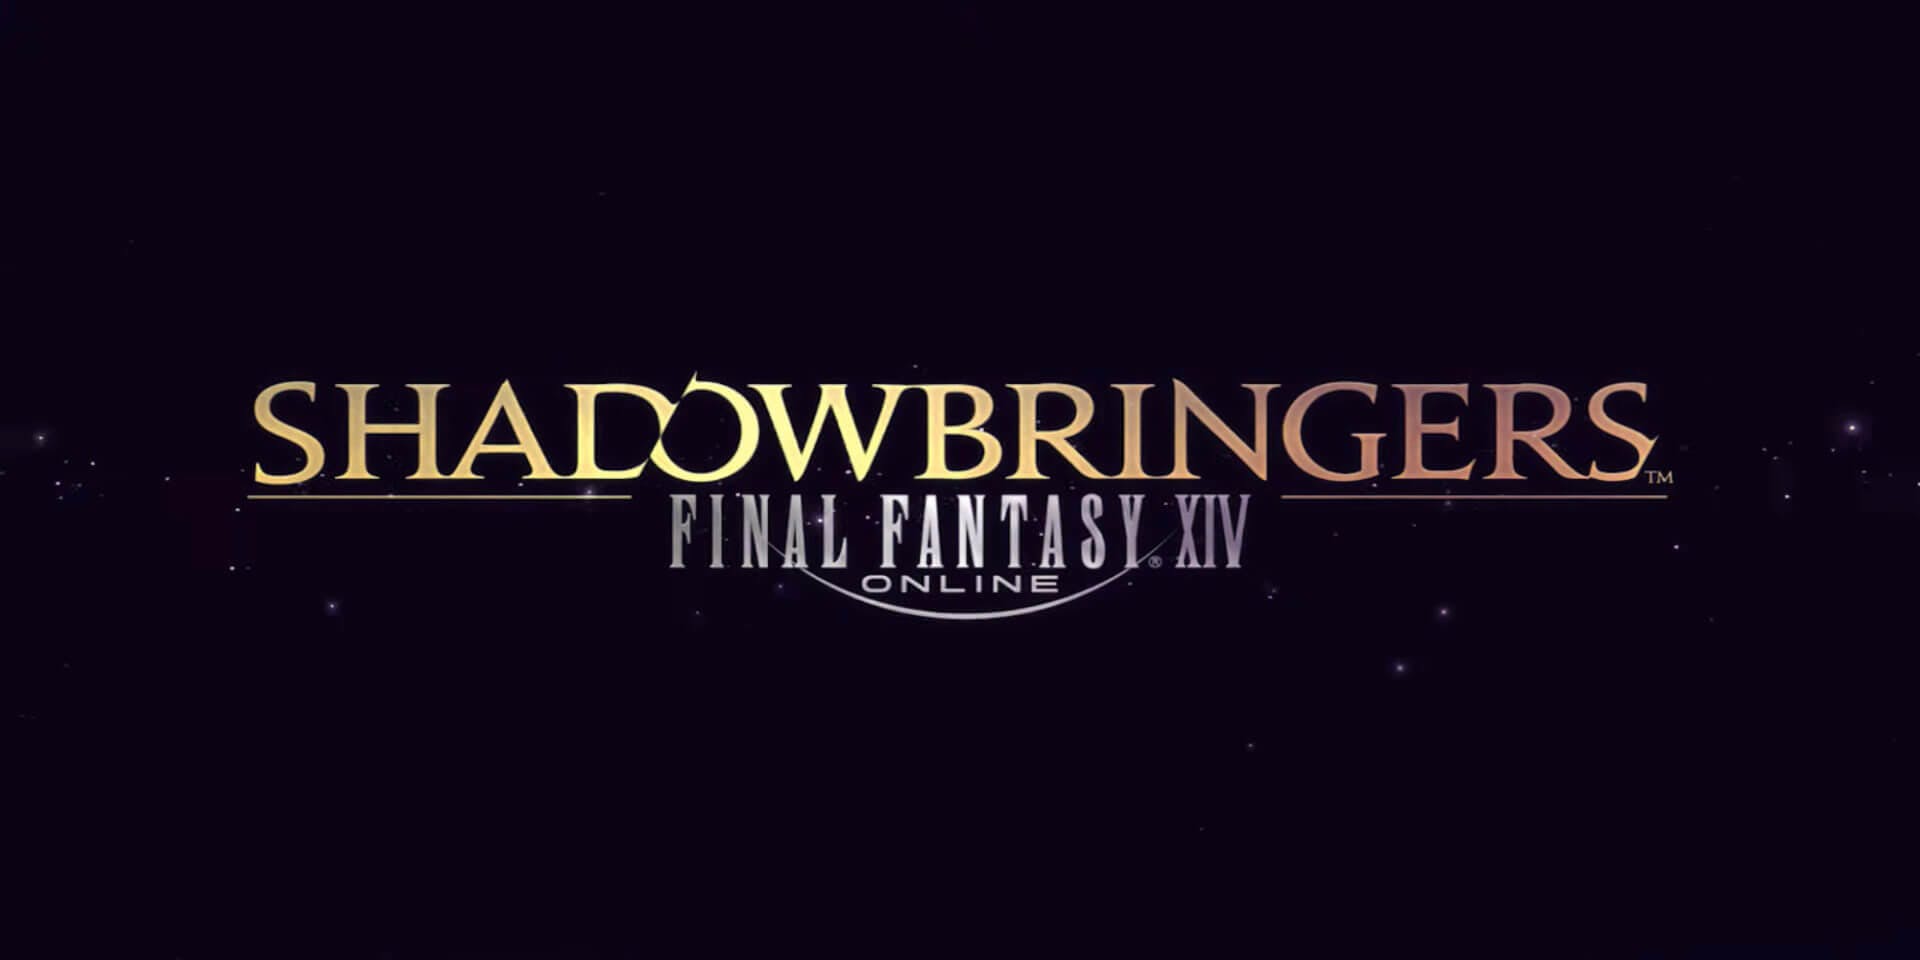 best rpg games 2019 final fantasy 14 shadowbringers